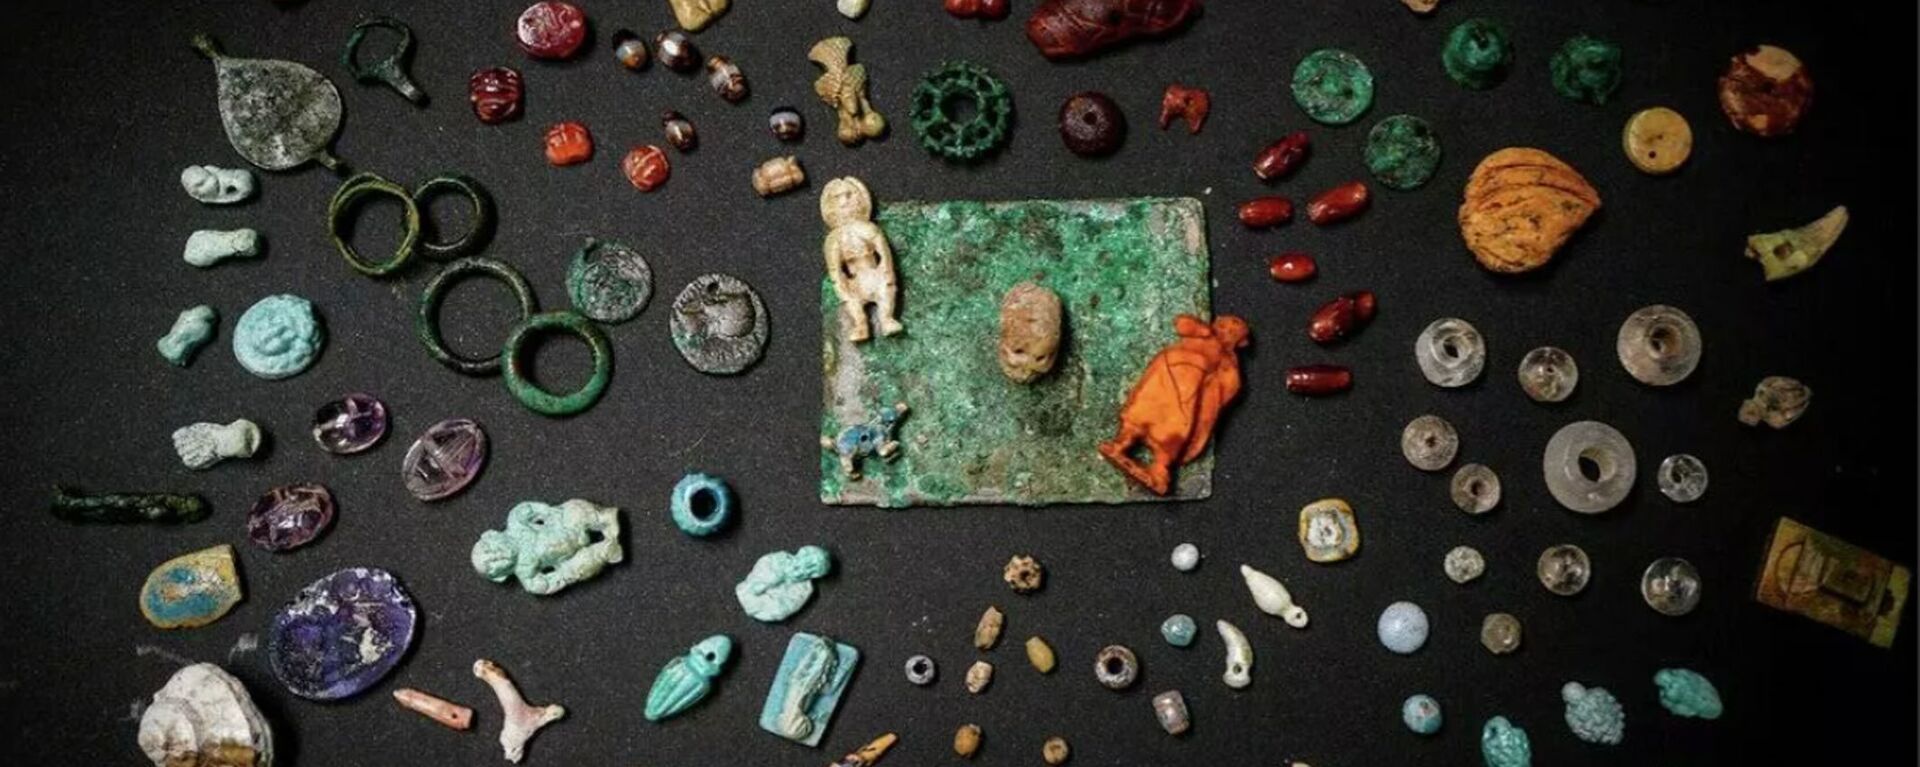 Amuletai, brangakmeniai ir dekoratyviniai dirbiniai iš fajanso, bronzos, kaulų ir gintaro, rasti kasinėjimų metu Pompėjoje - Sputnik Lietuva, 1920, 14.10.2020